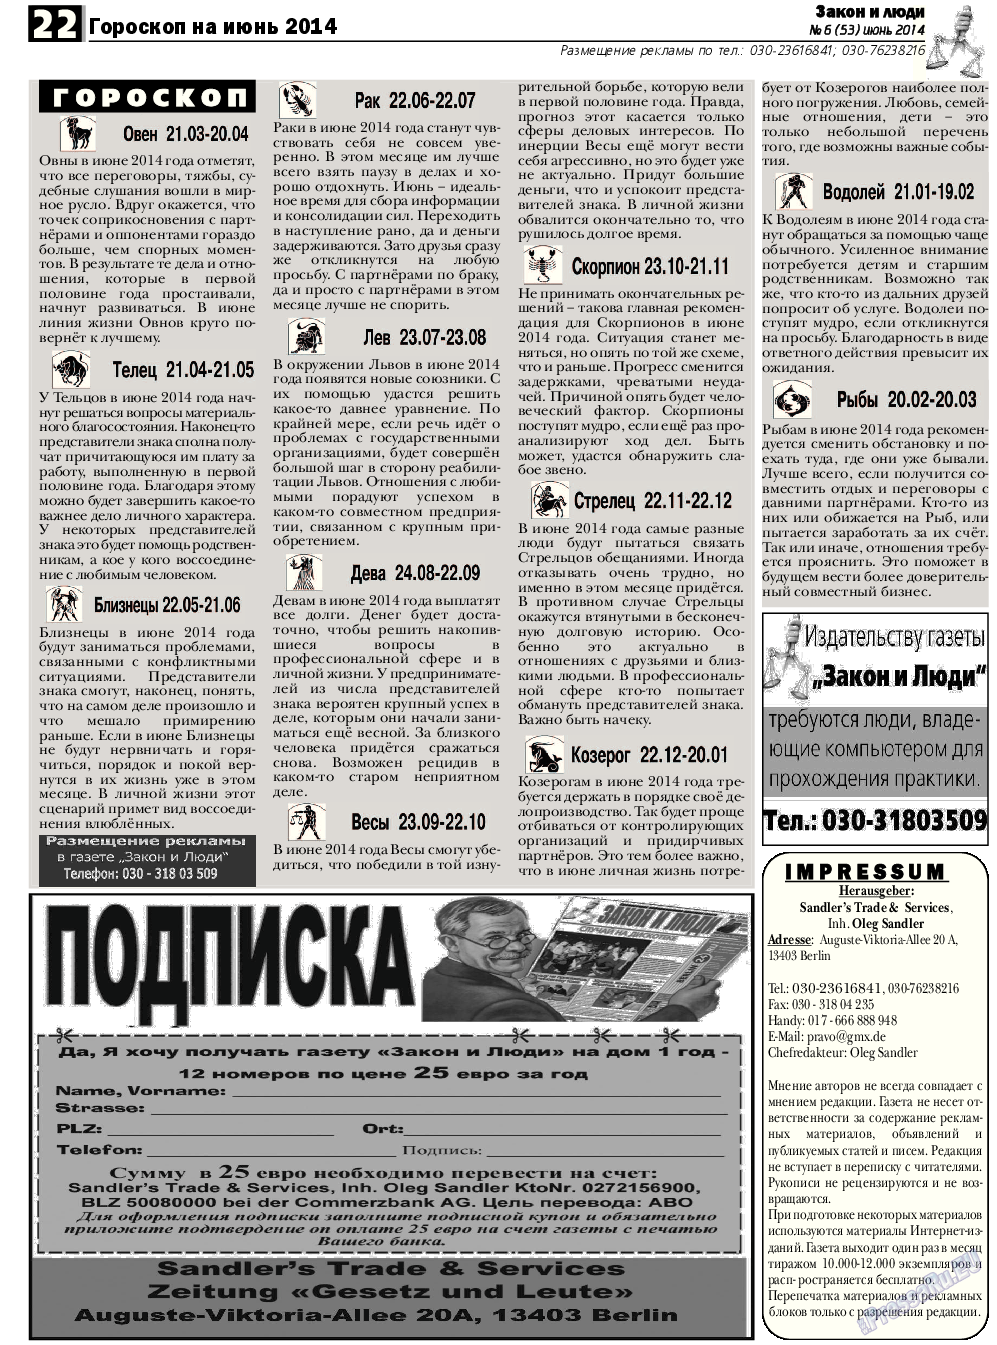 Закон и люди, газета. 2014 №6 стр.22